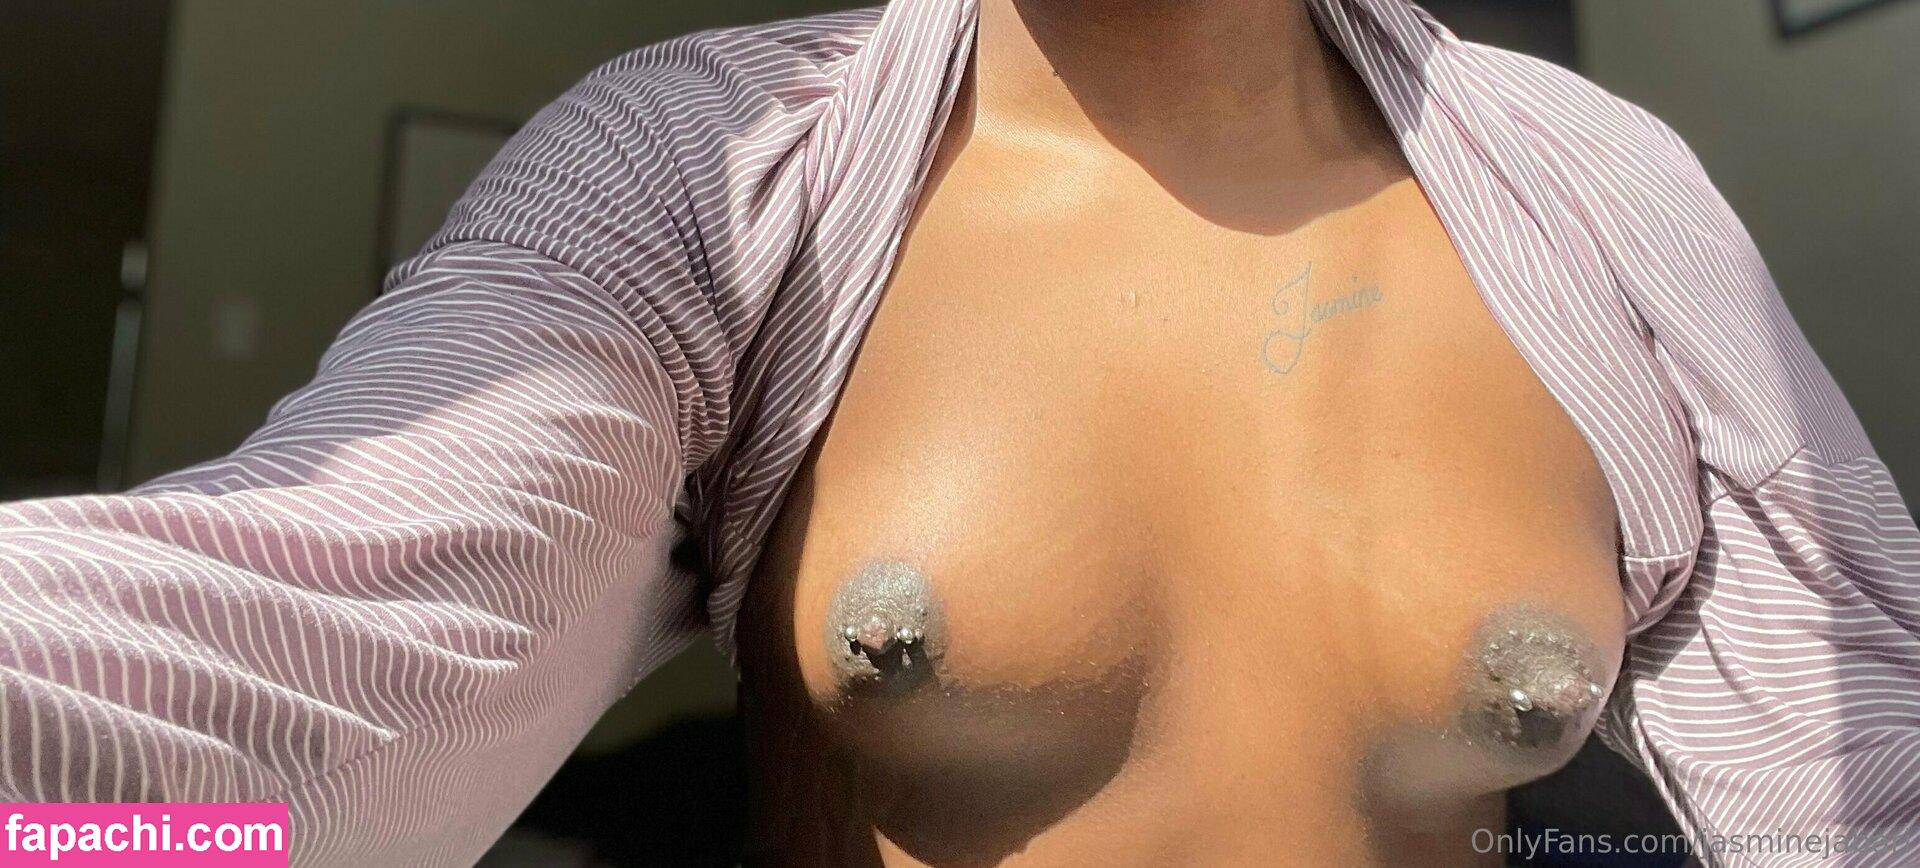 jasminejabari leaked nude photo #0052 from OnlyFans/Patreon